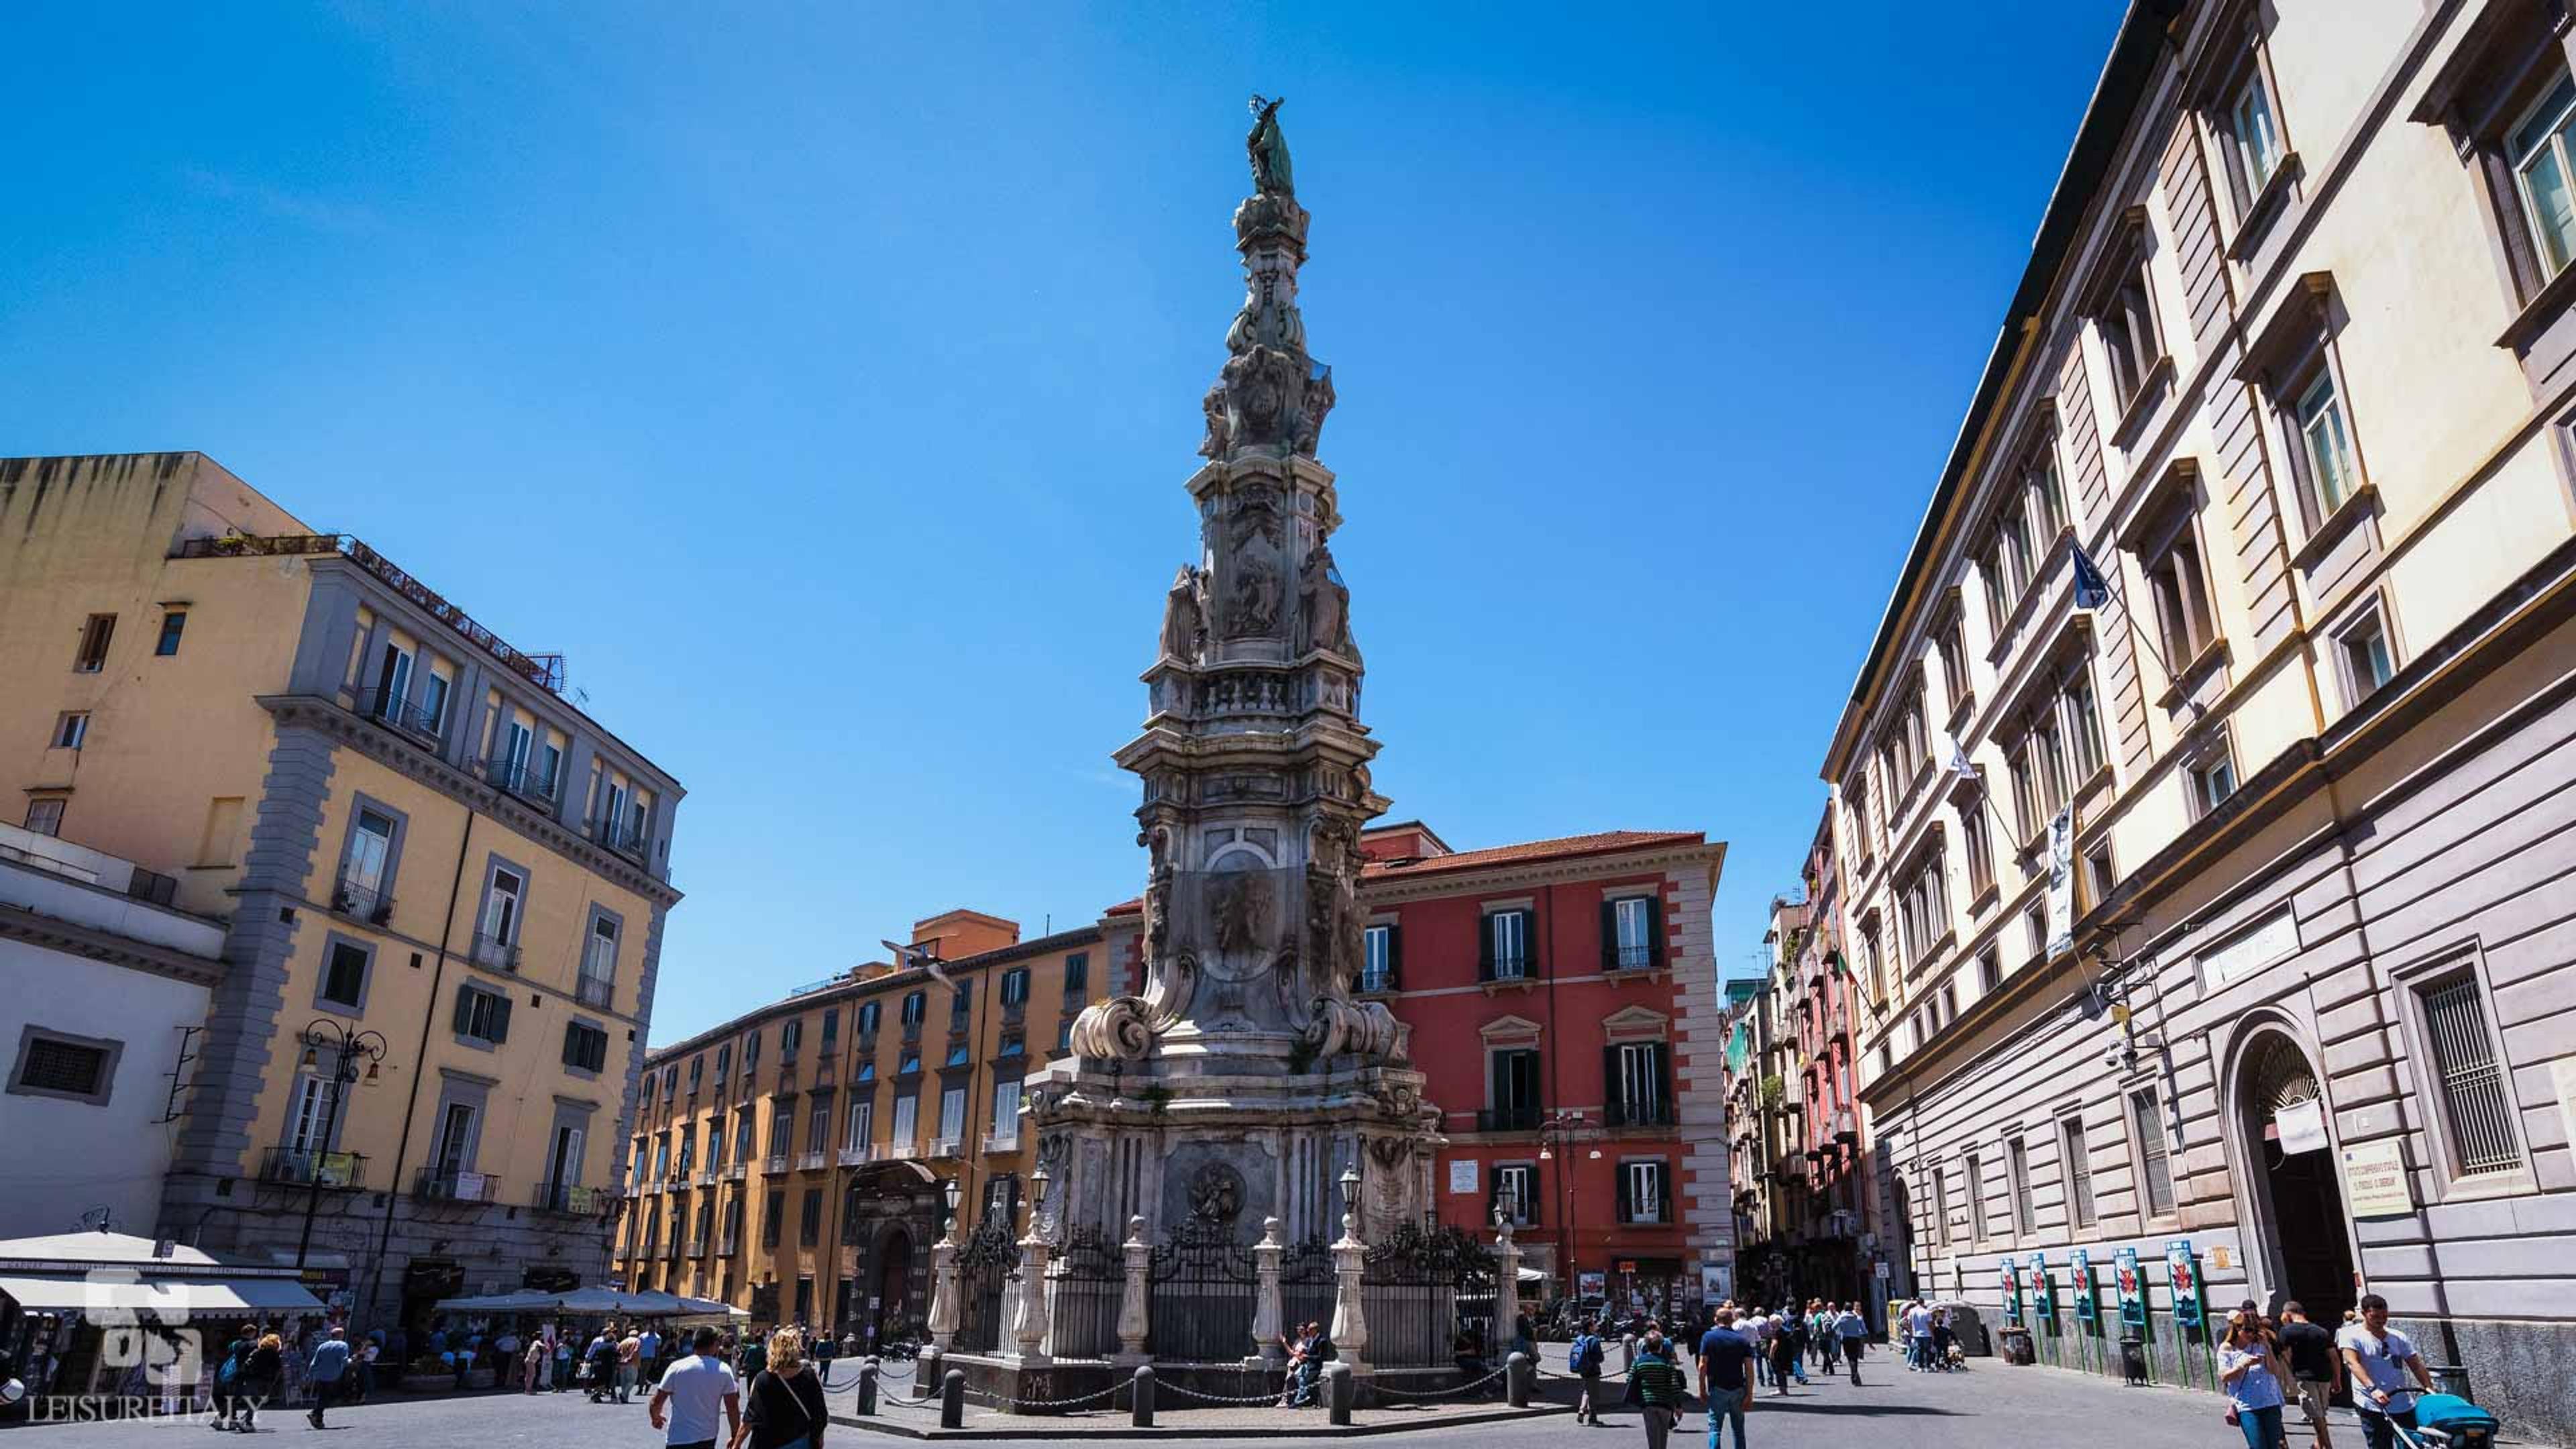 Piazza-del-Gesu Naples